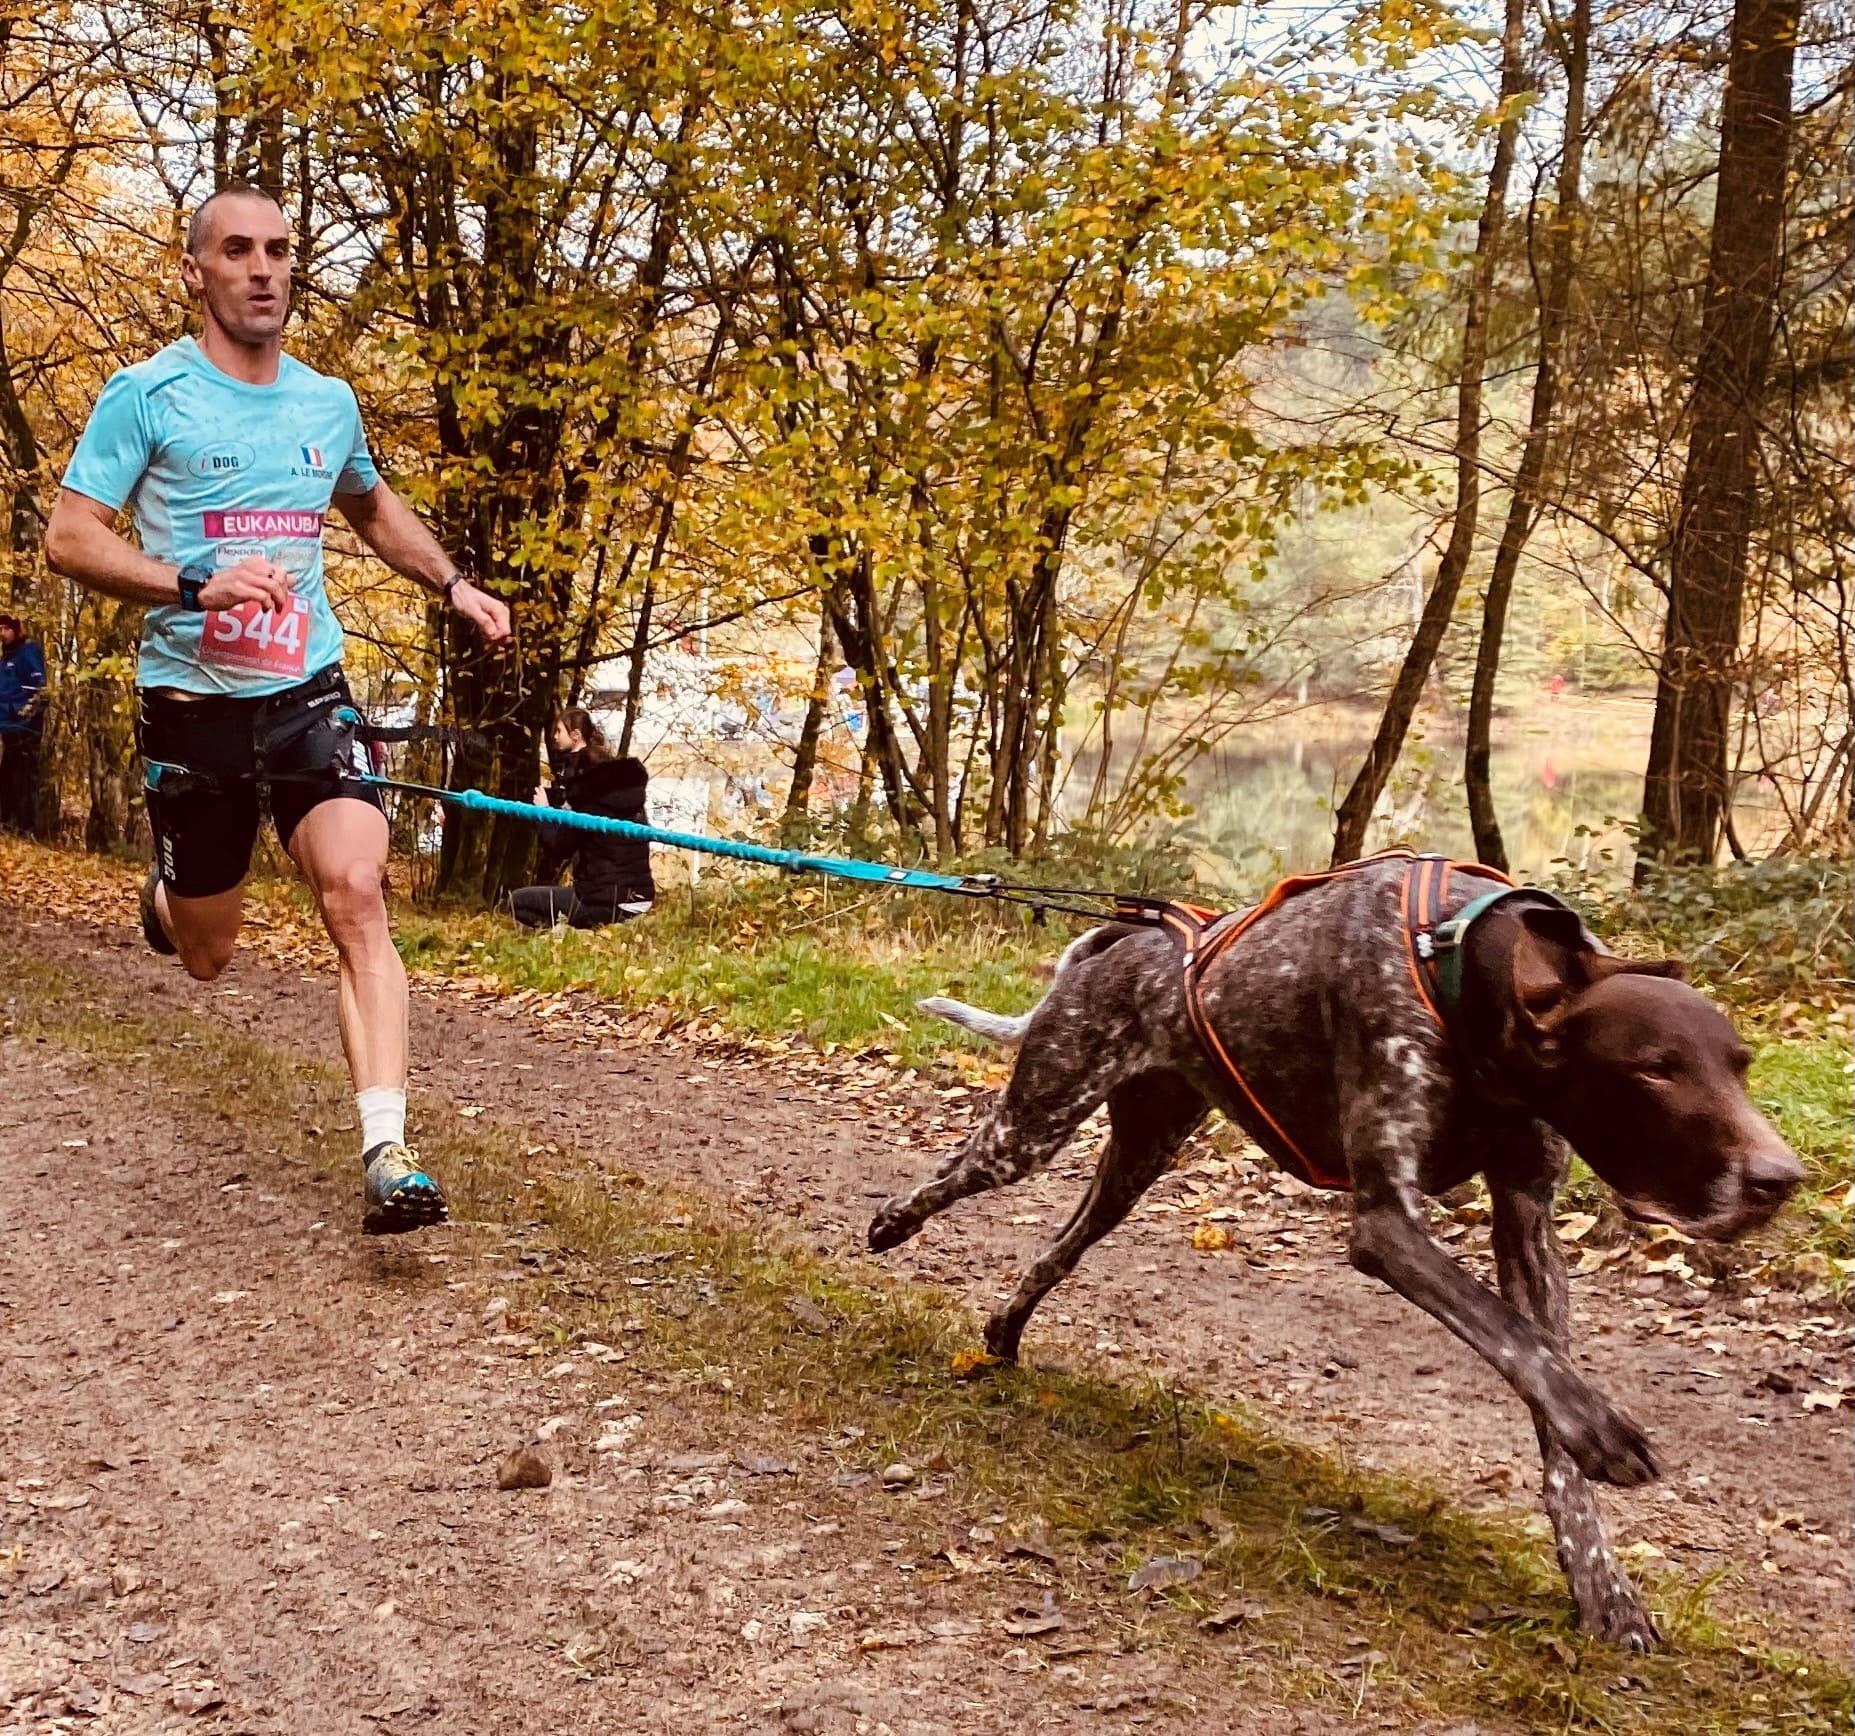 Canicross : le plaisir de courir avec son chien